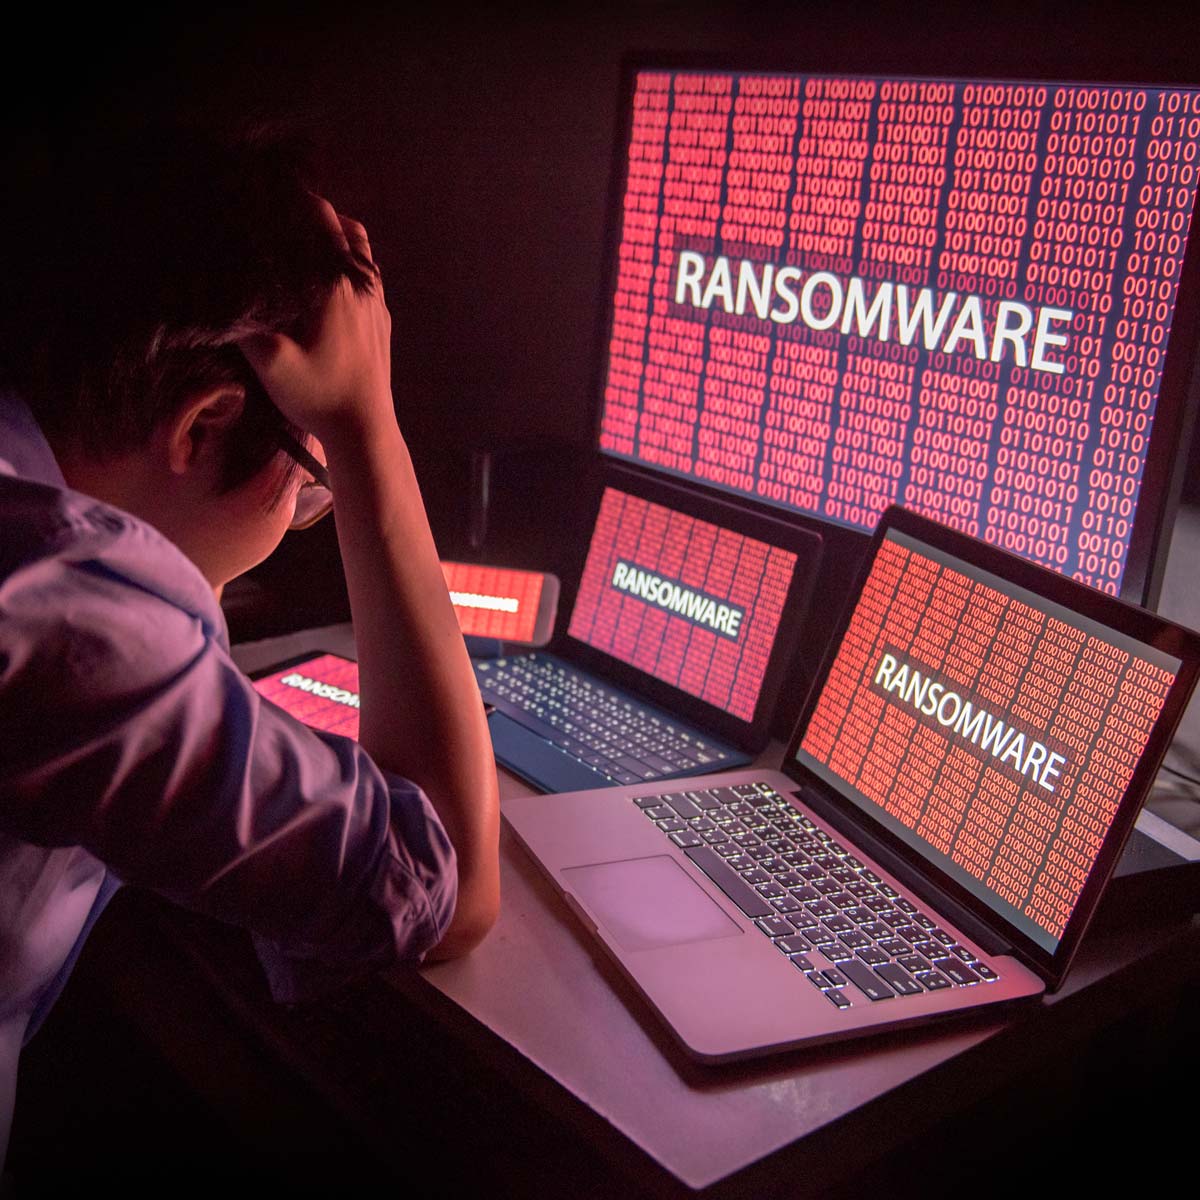 Ransomeware Attack